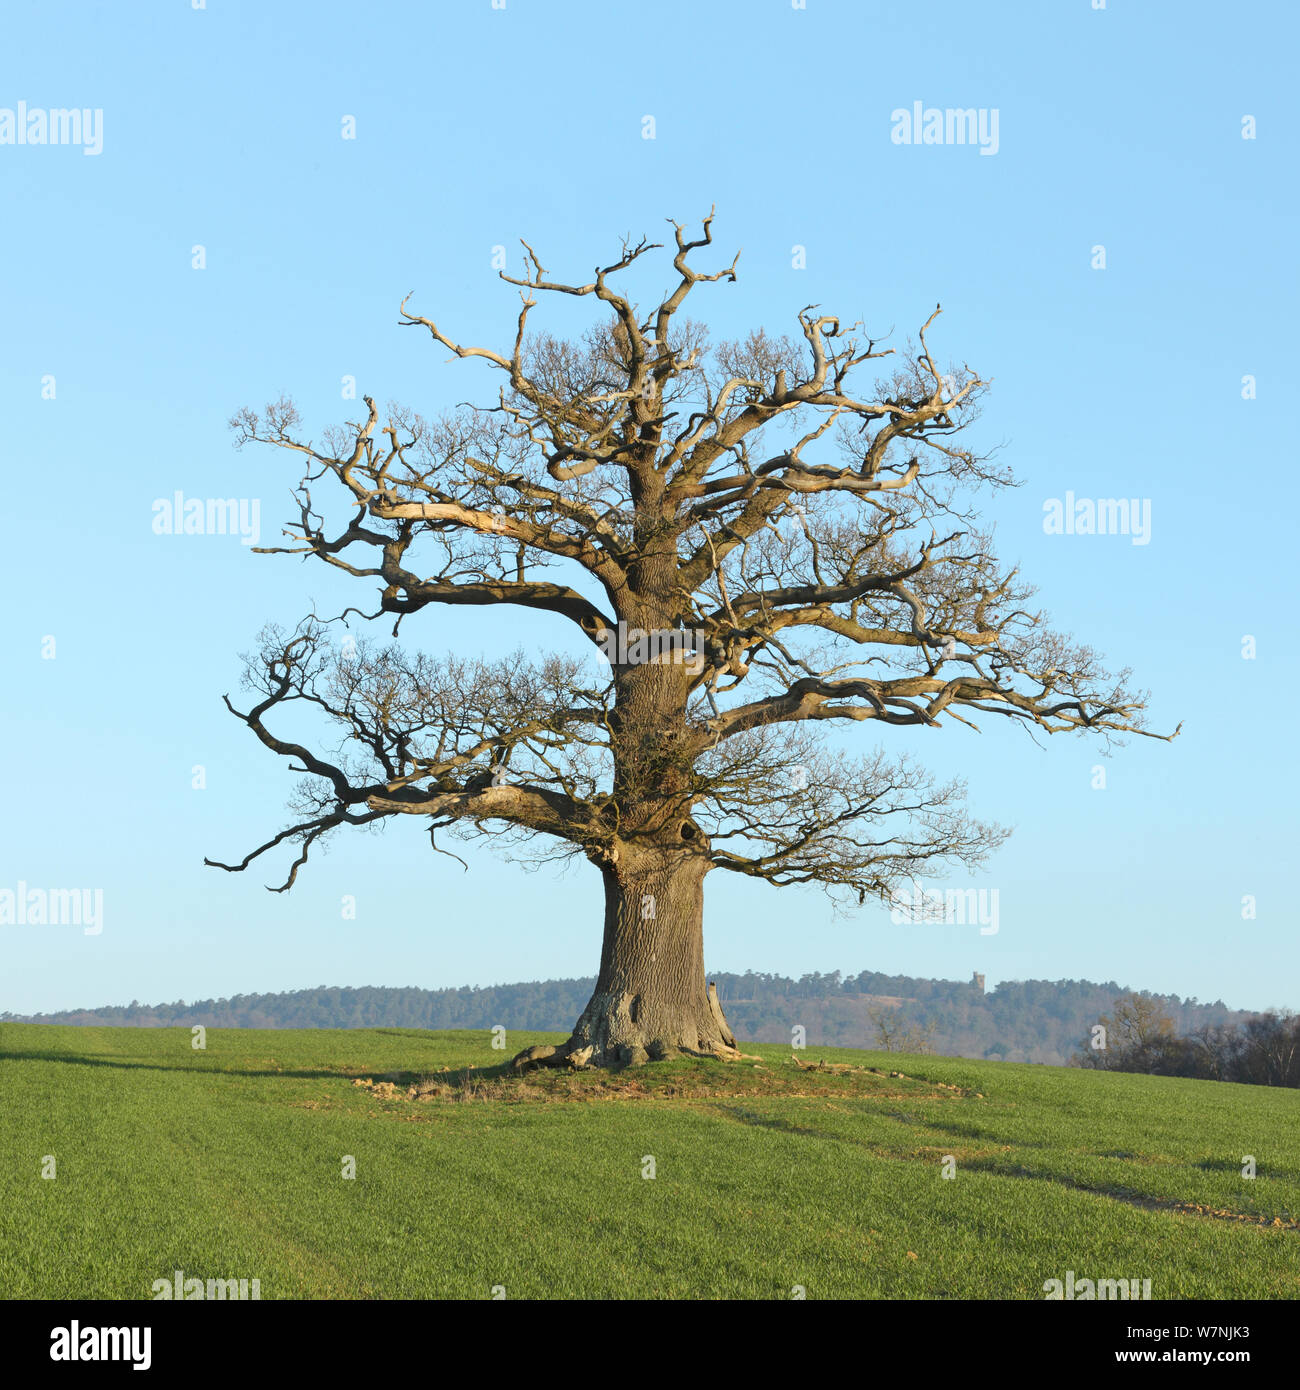 Arbre de chêne français (Quercus robur) portrait en hiver, Surrey, UK, Mars Banque D'Images